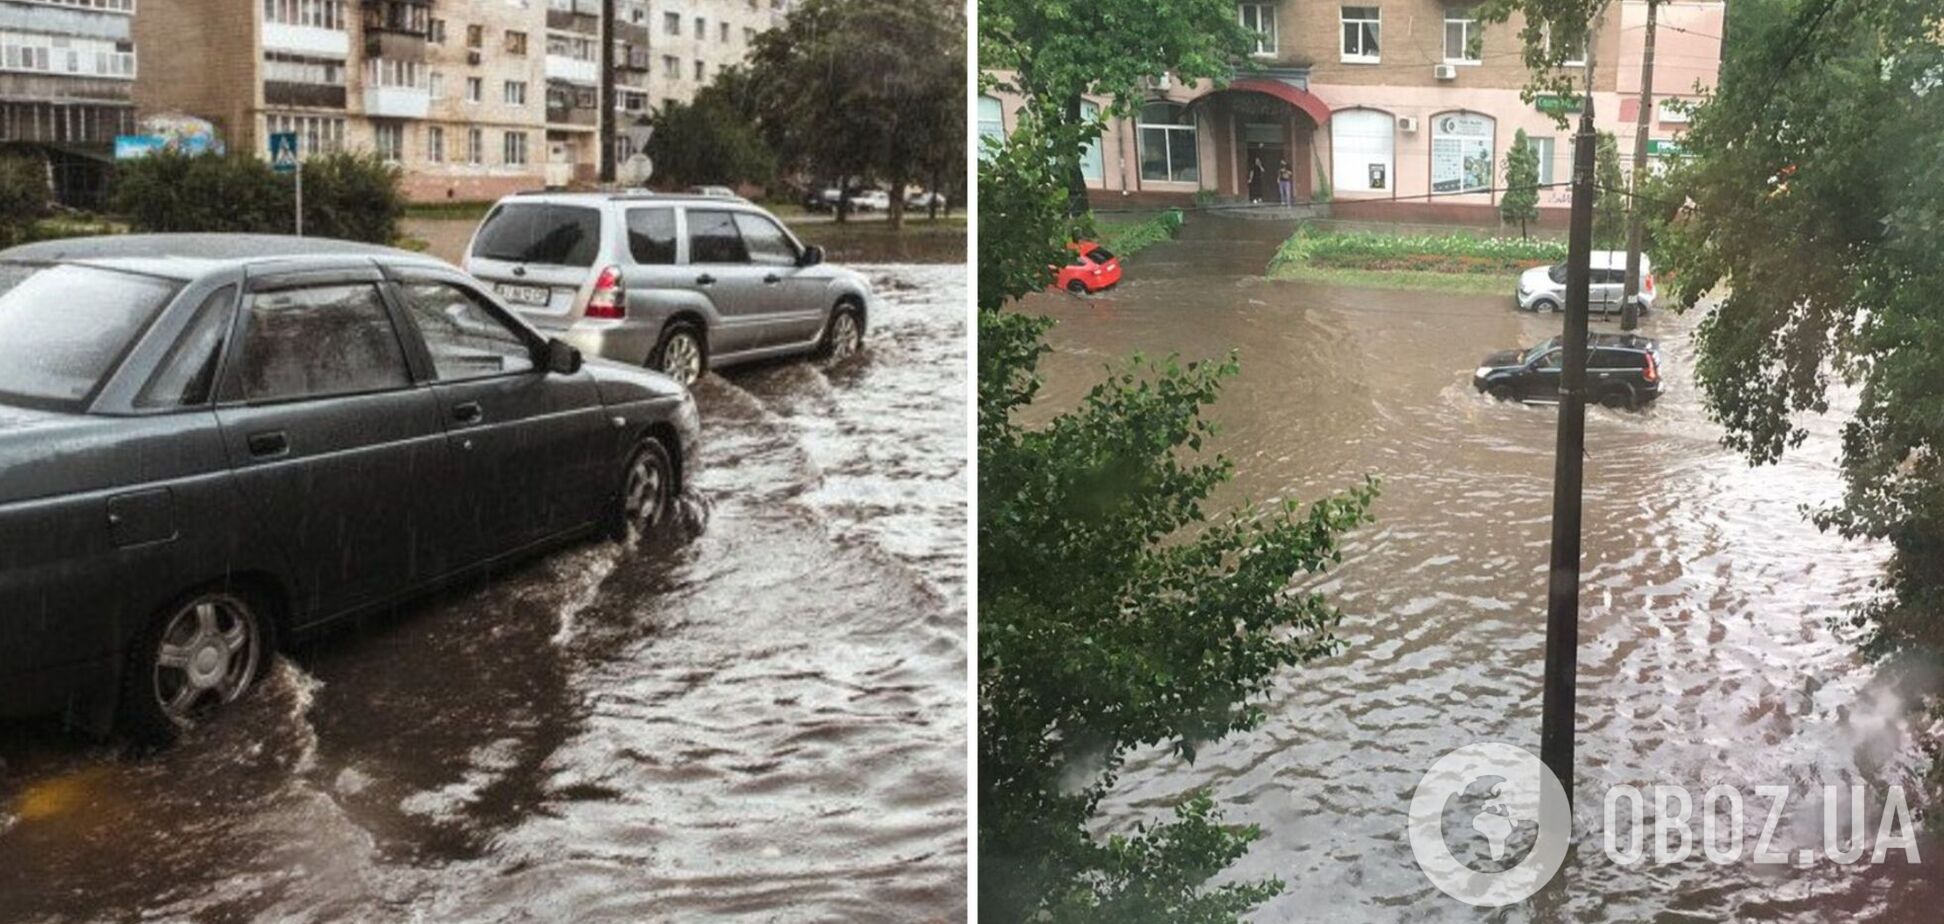 Авто превратились в подлодки, люди плавали на улицах, как в море: появились новые кадры из затопленного Киева